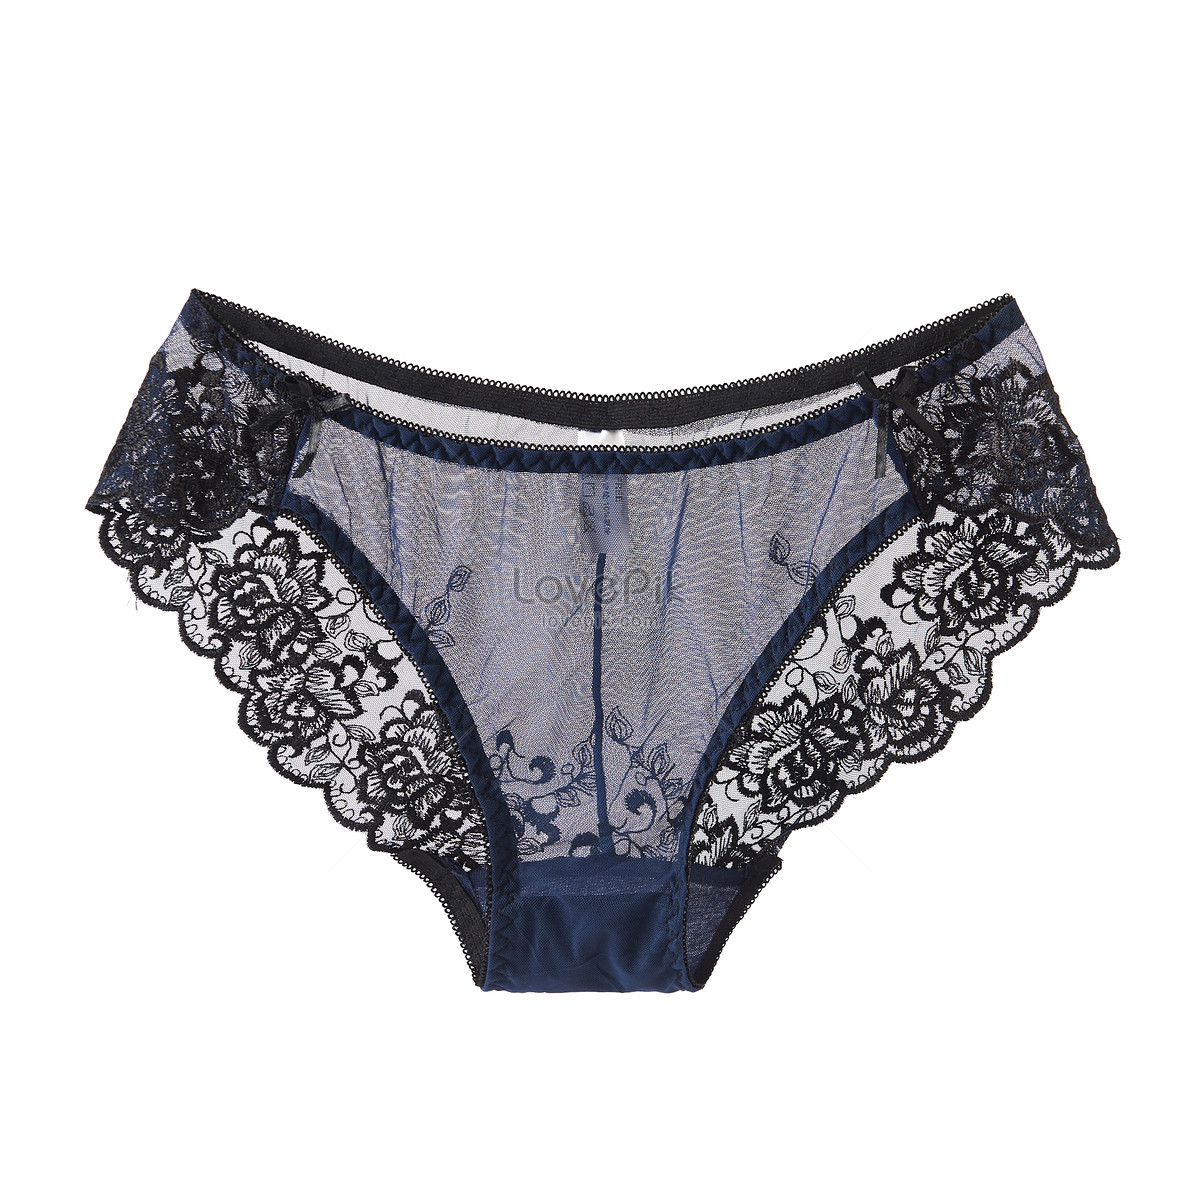 Feminine lacy underwear Stock Photo by ©zestmarina 167205576